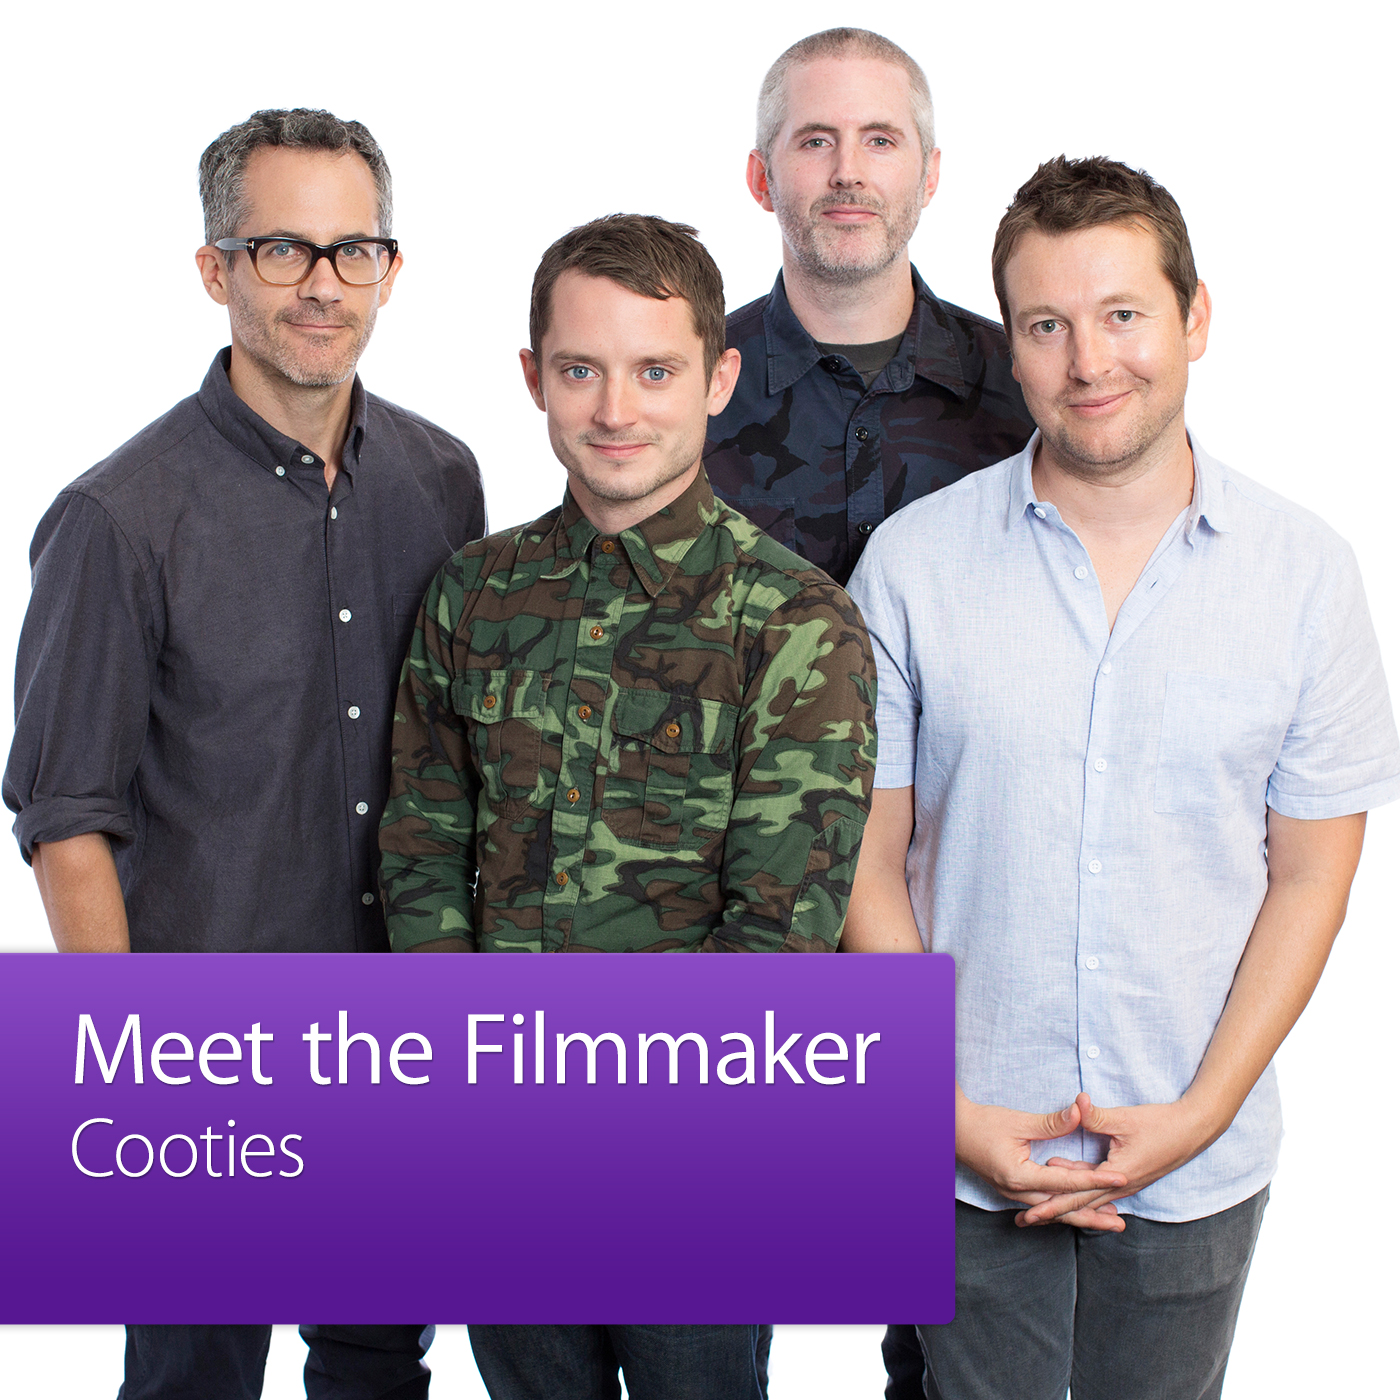 Cooties: Meet the Filmmaker